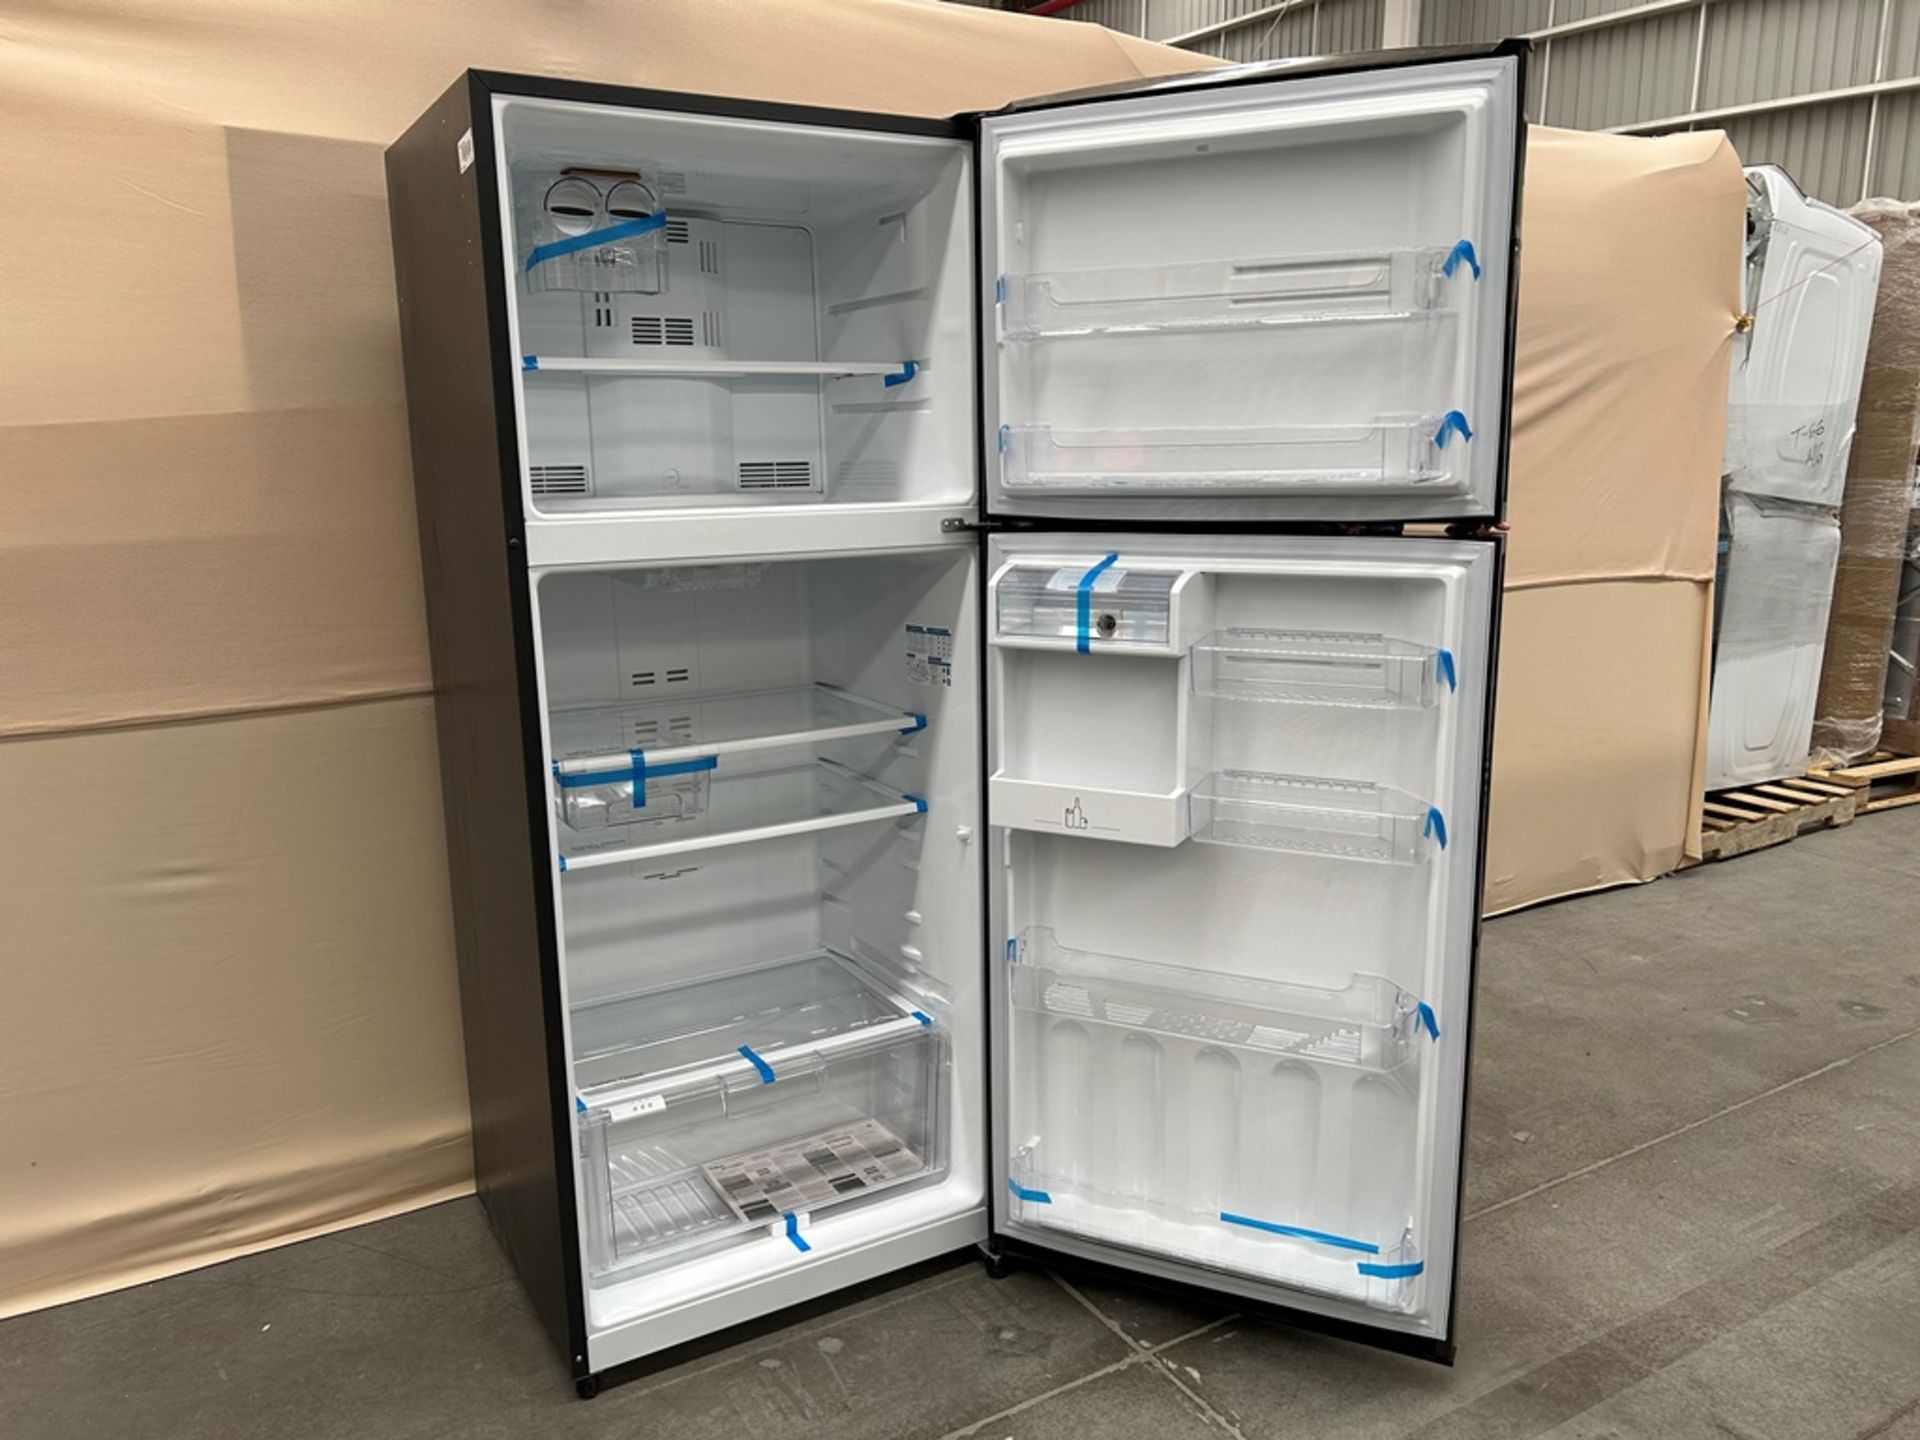 Lote de 2 refrigeradores contiene: Refrigerador con dispensador de agua Marca MABE, Modelo RMS510IA - Image 5 of 7